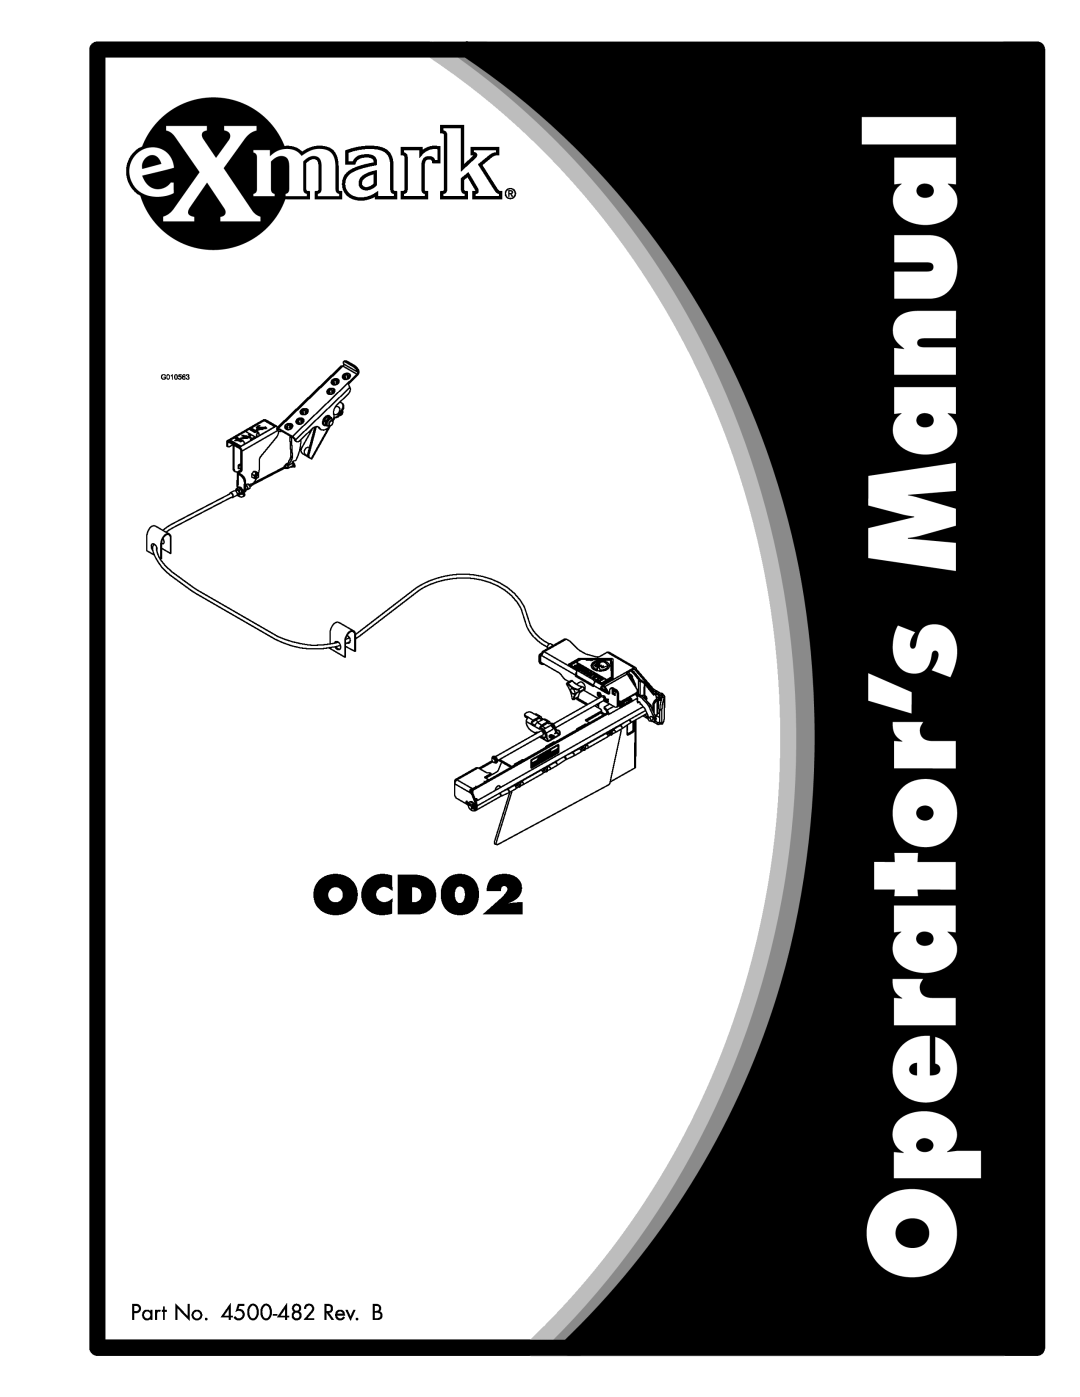 Exmark OCD02 manual Part No. 4500-482 Rev. B 